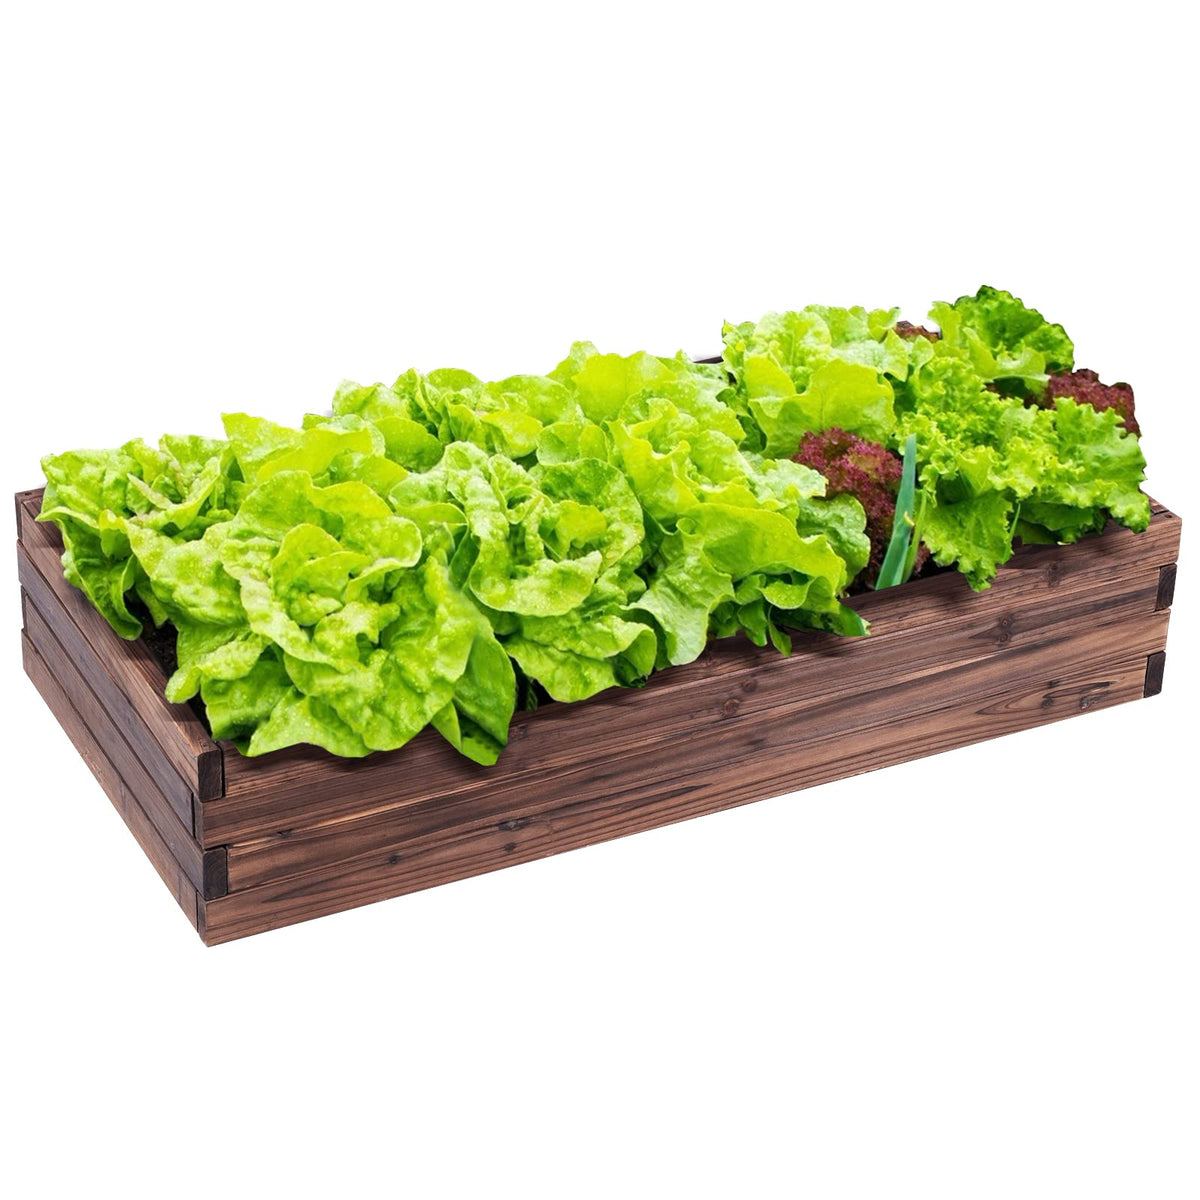 Giantex Raised Garden Bed, Wood Patio Vegetable Flower Rectangular Planter